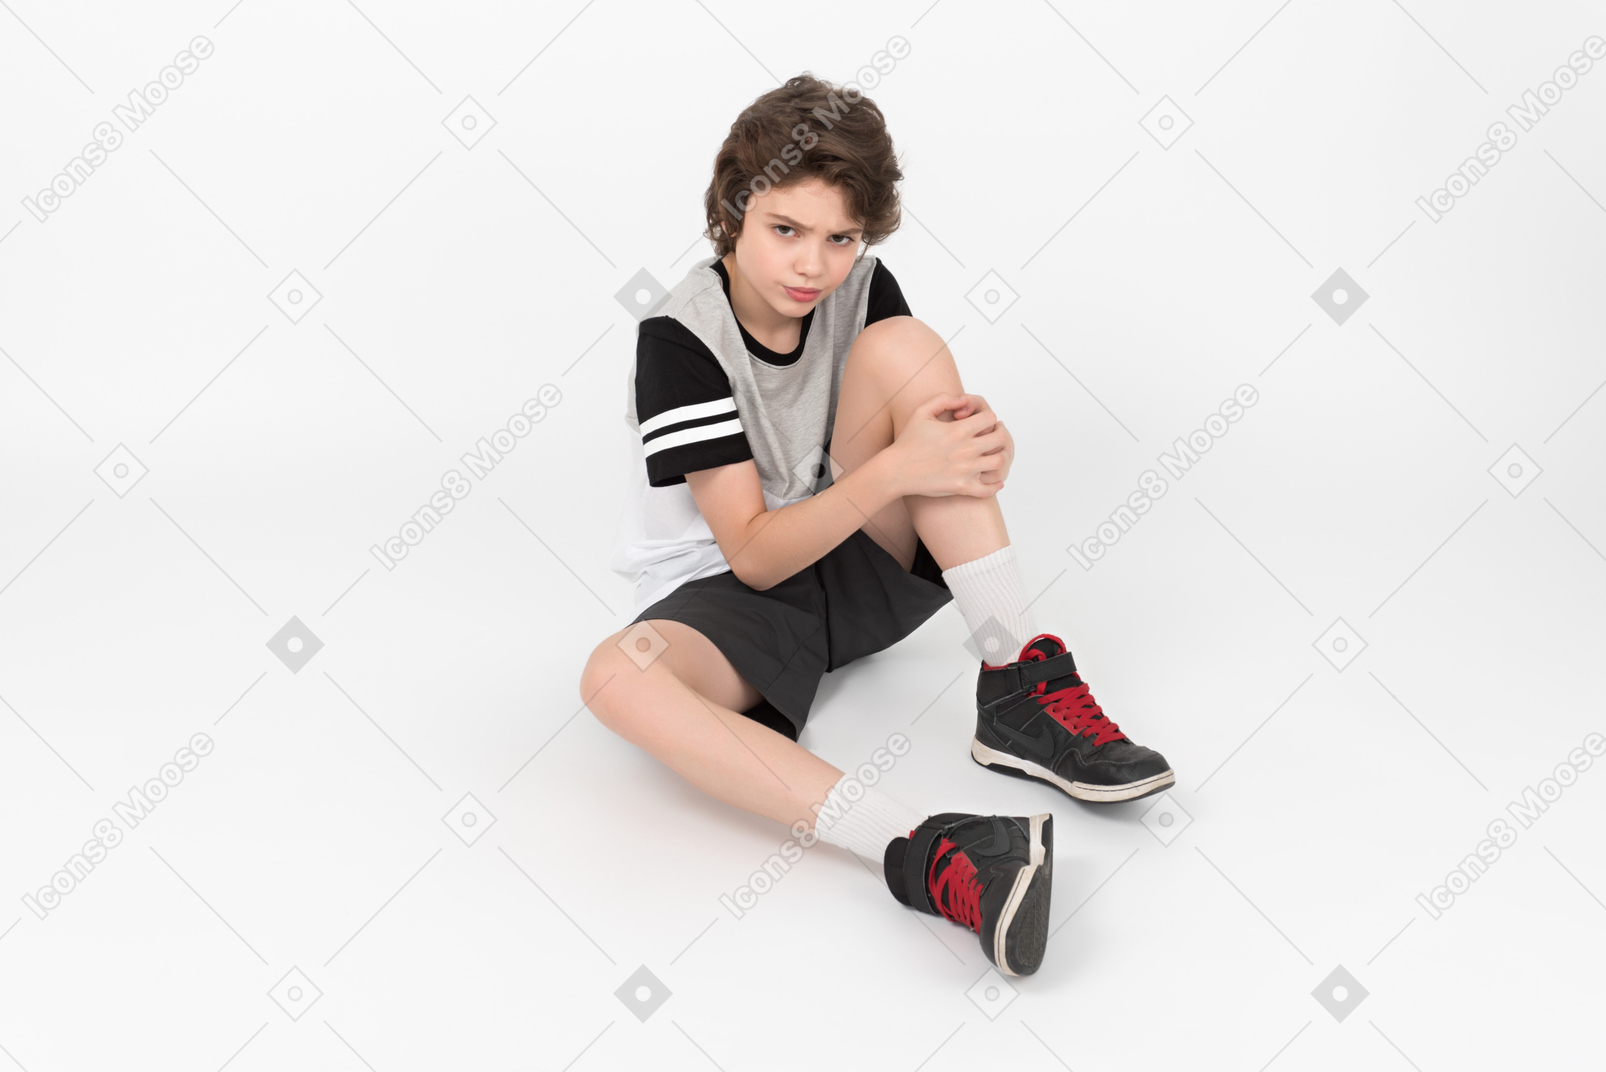 심술 궂은 운동 소년이 바닥에 앉아 다리를 만지고 있습니다.